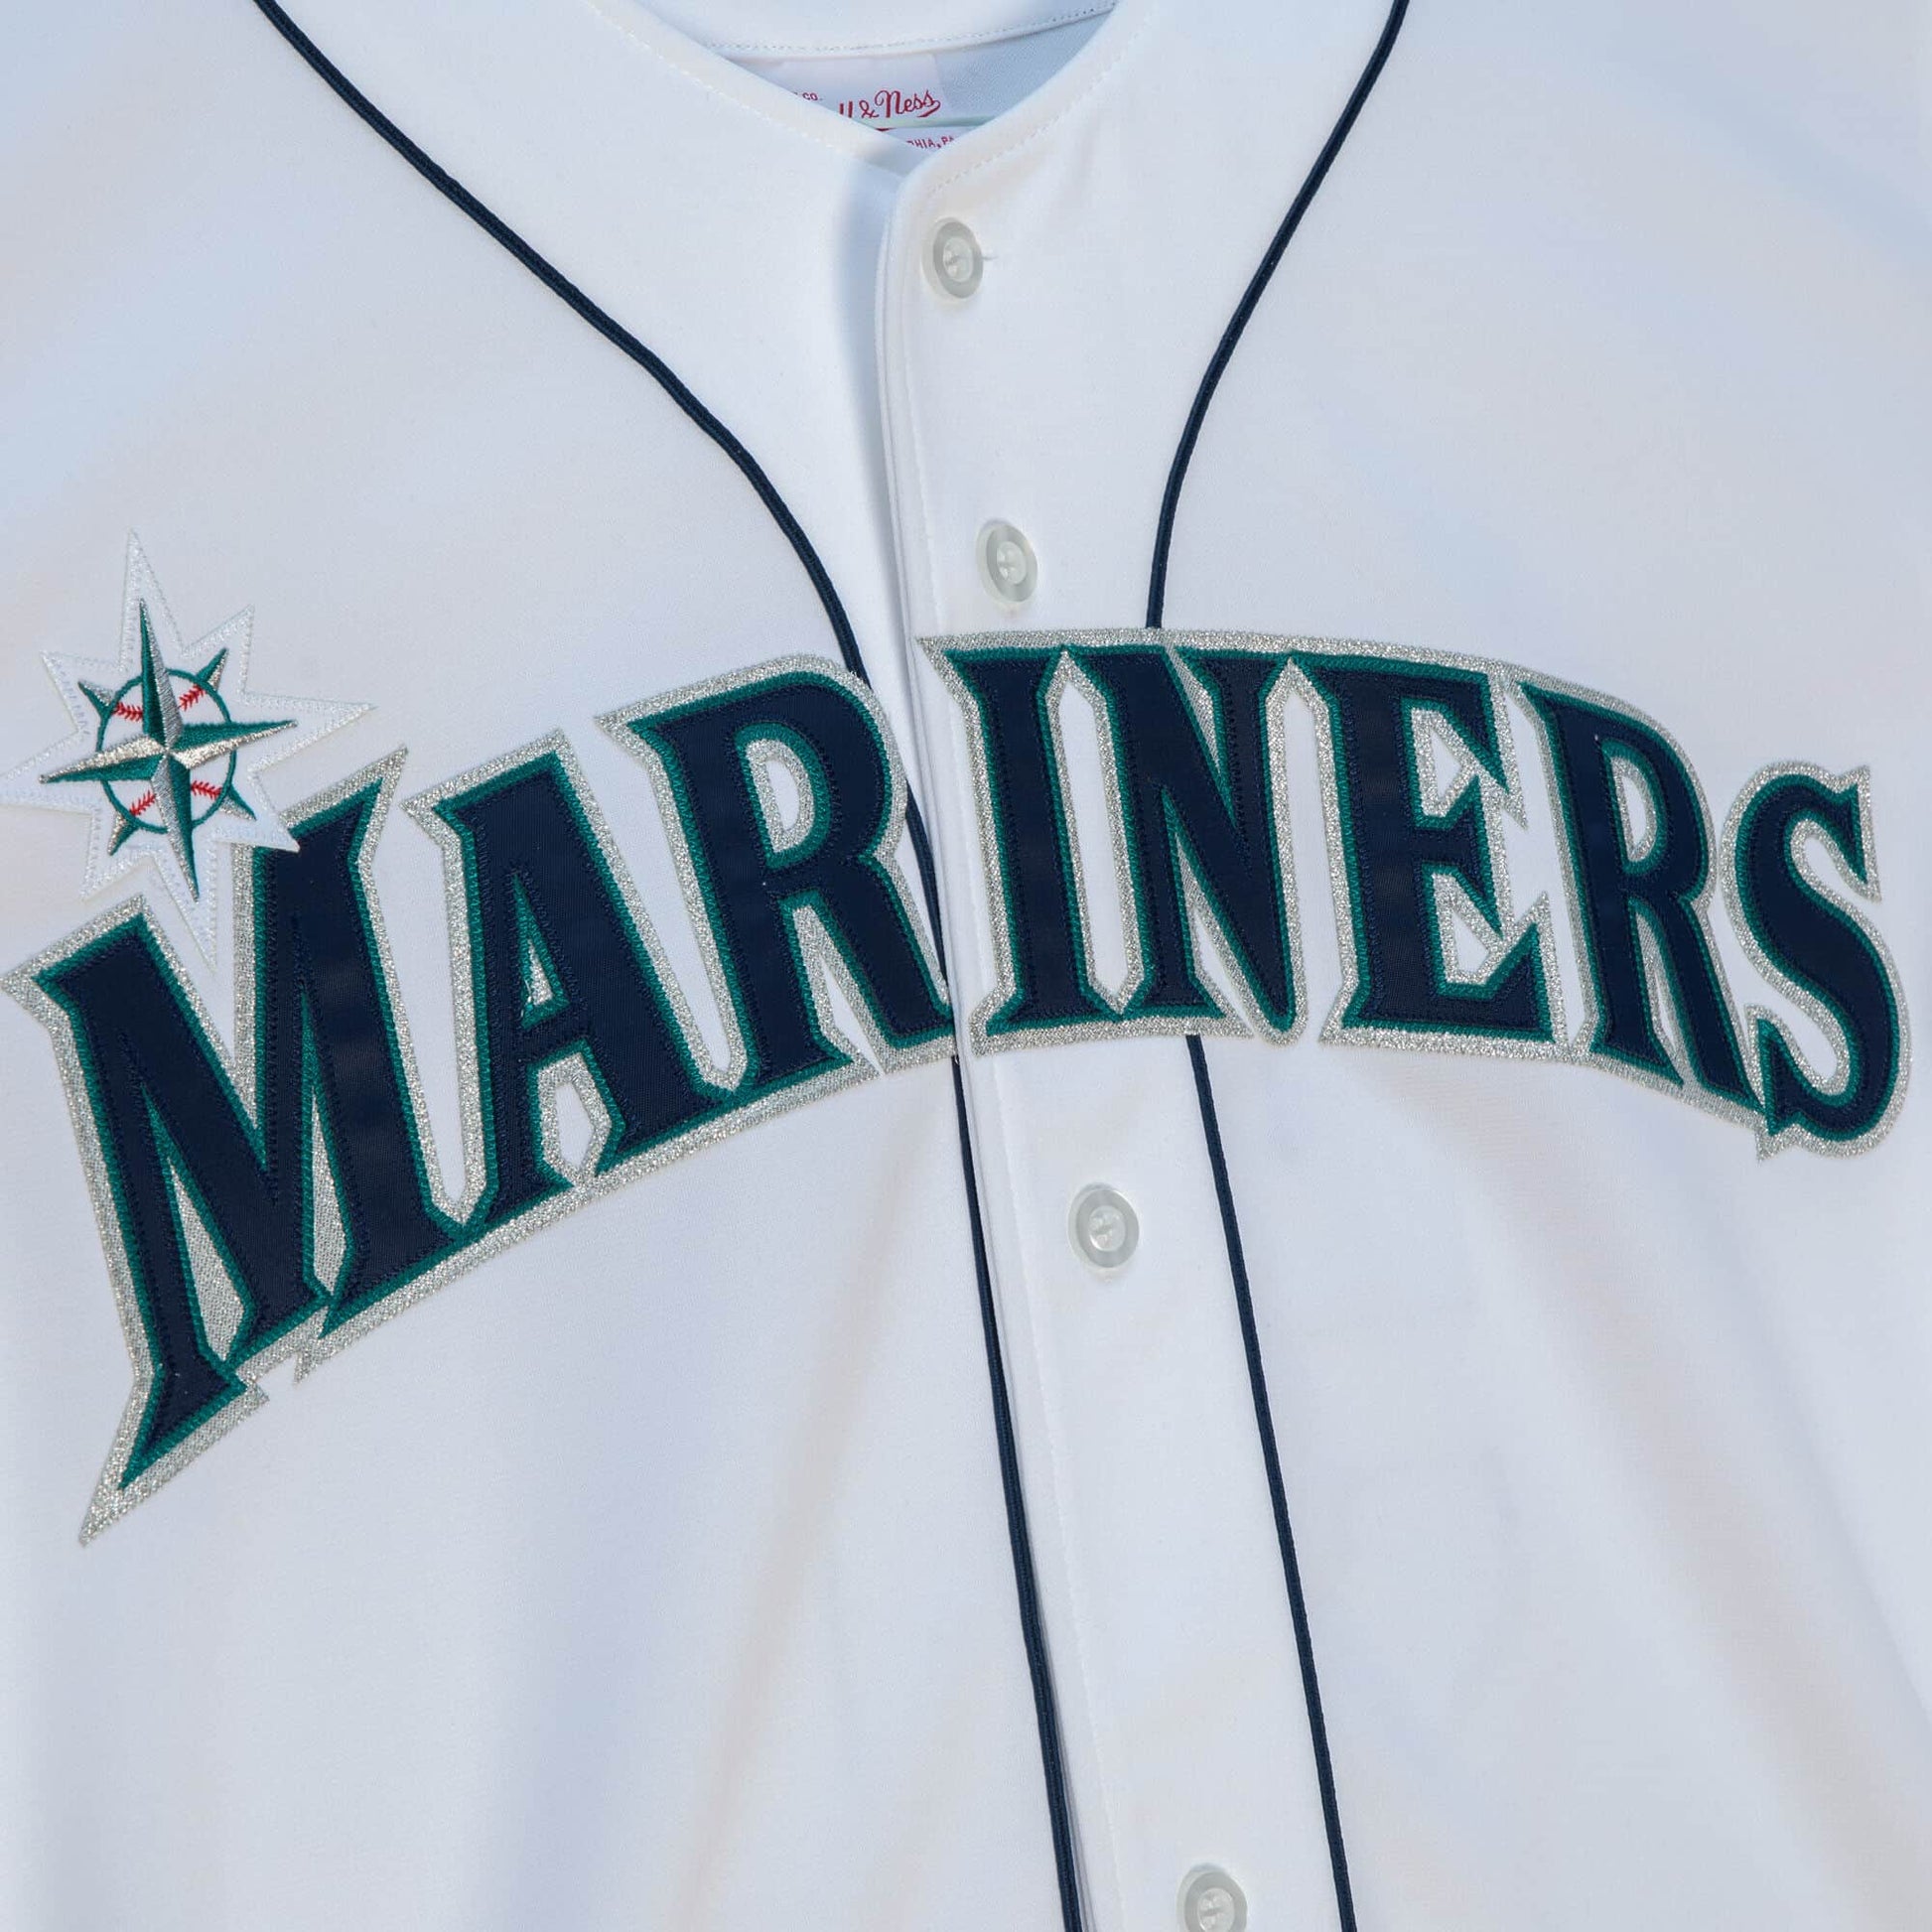 2009 Ichiro Suzuki Game Worn Seattle Mariners Jersey.  Baseball